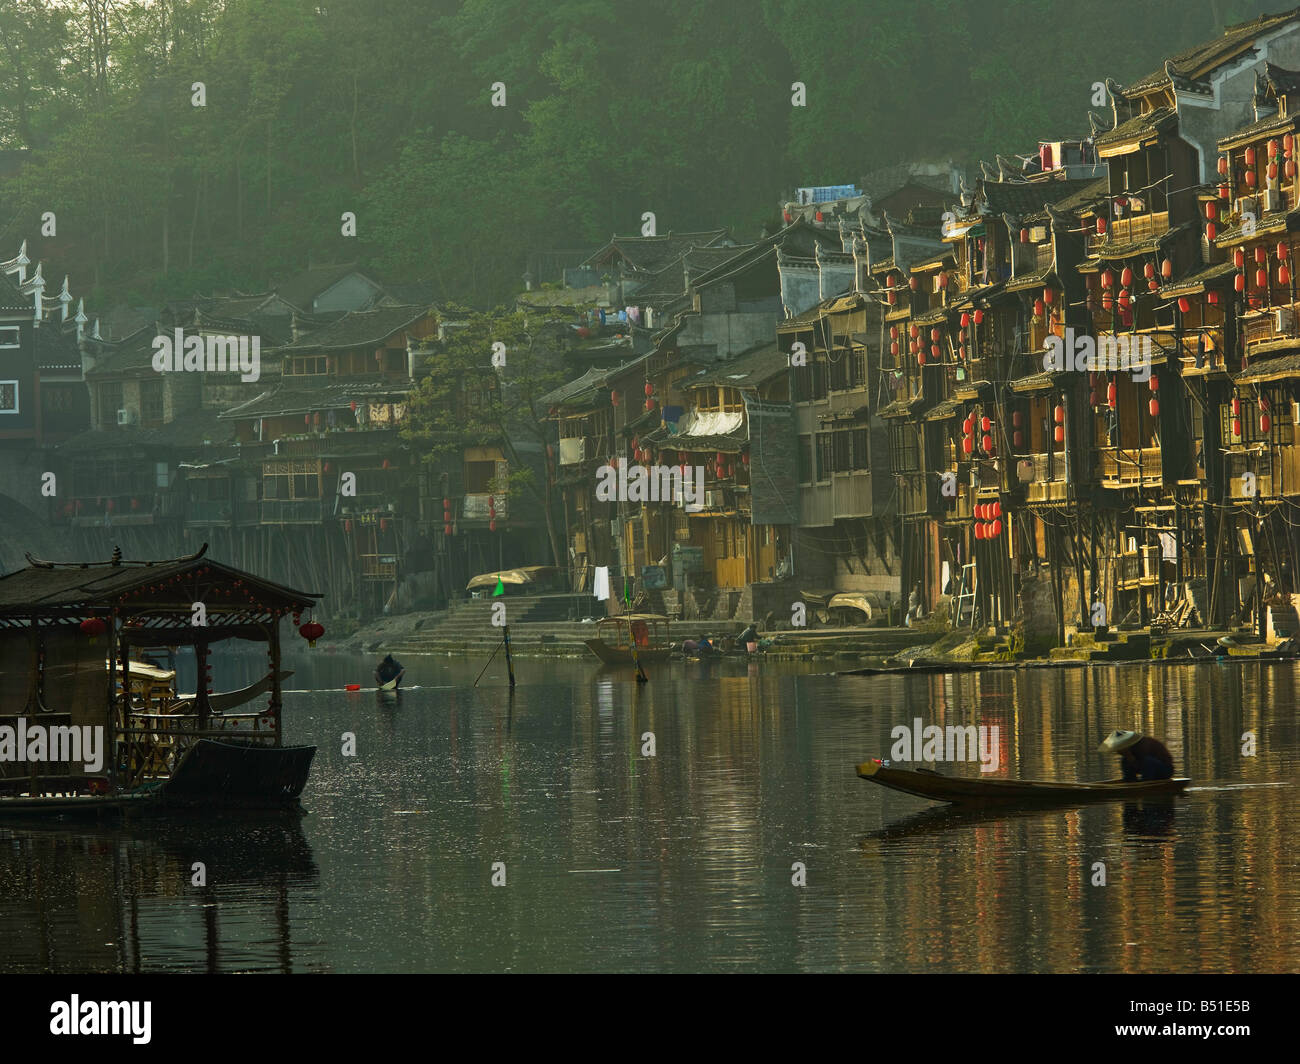 La antigua ciudad de Fenghuang en China Foto de stock